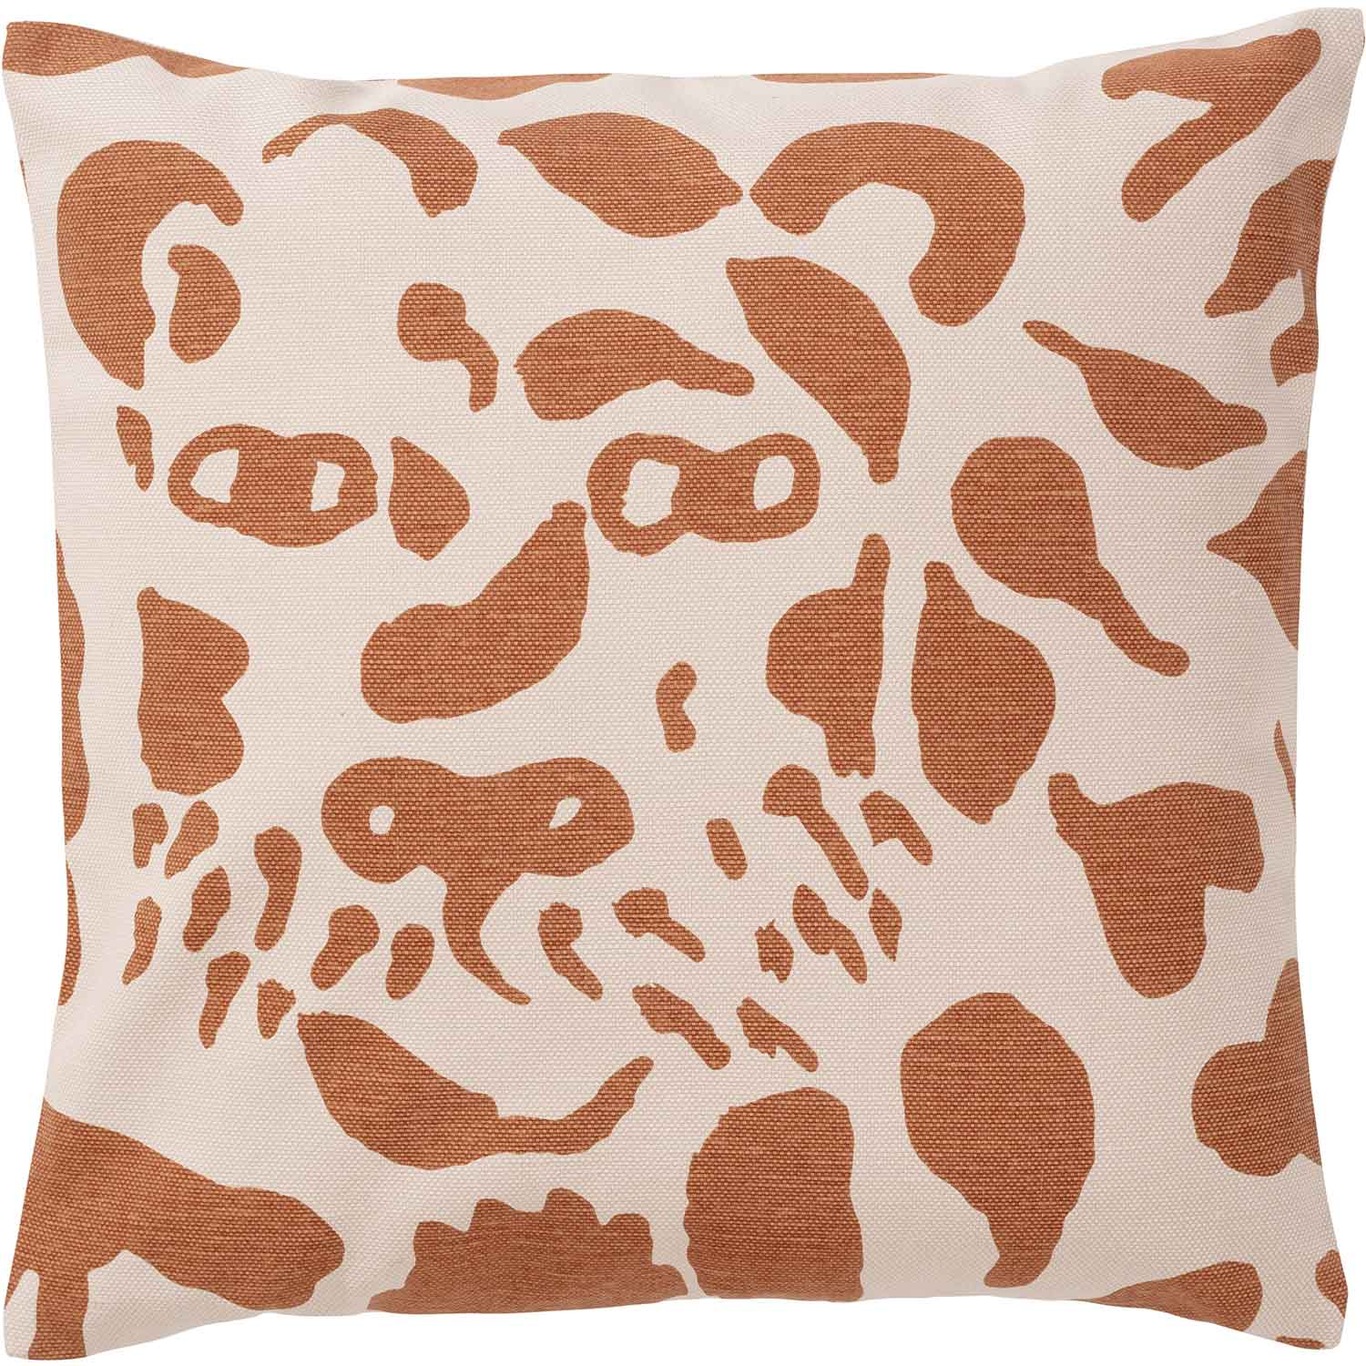 Oiva Toikka Collection Tyynynpäällinen 47x47 cm, Cheetah Brown